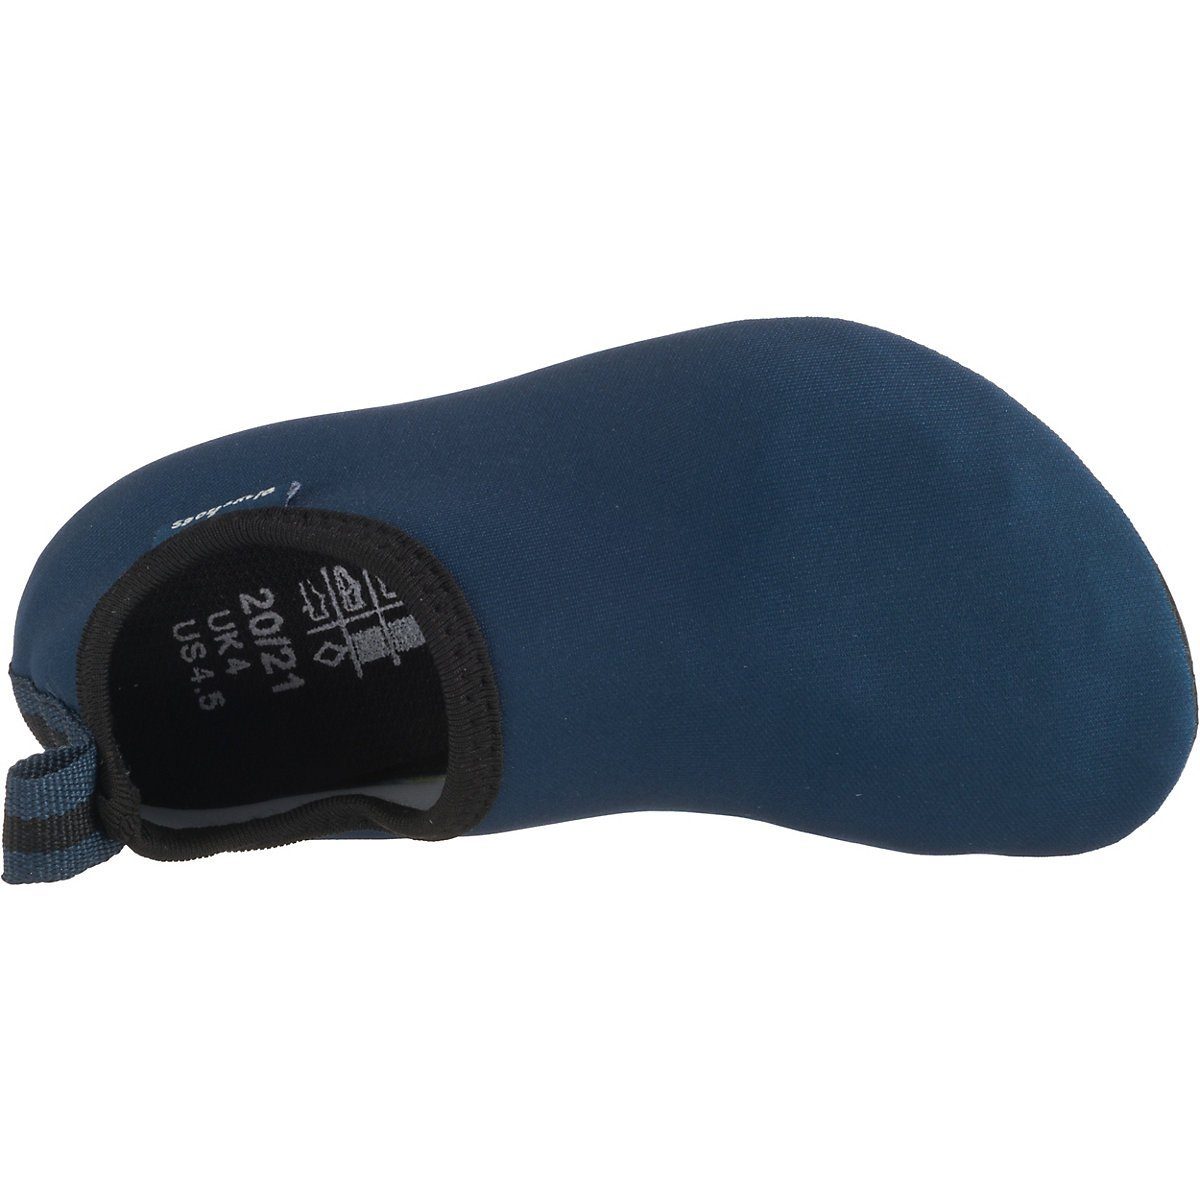 Badeschuh Playshoes Barfuß-Schuh Schwimmschuhe, Uni Passform, mit blau Wasserschuhe flexible Sohle rutschhemmender Badeschuhe